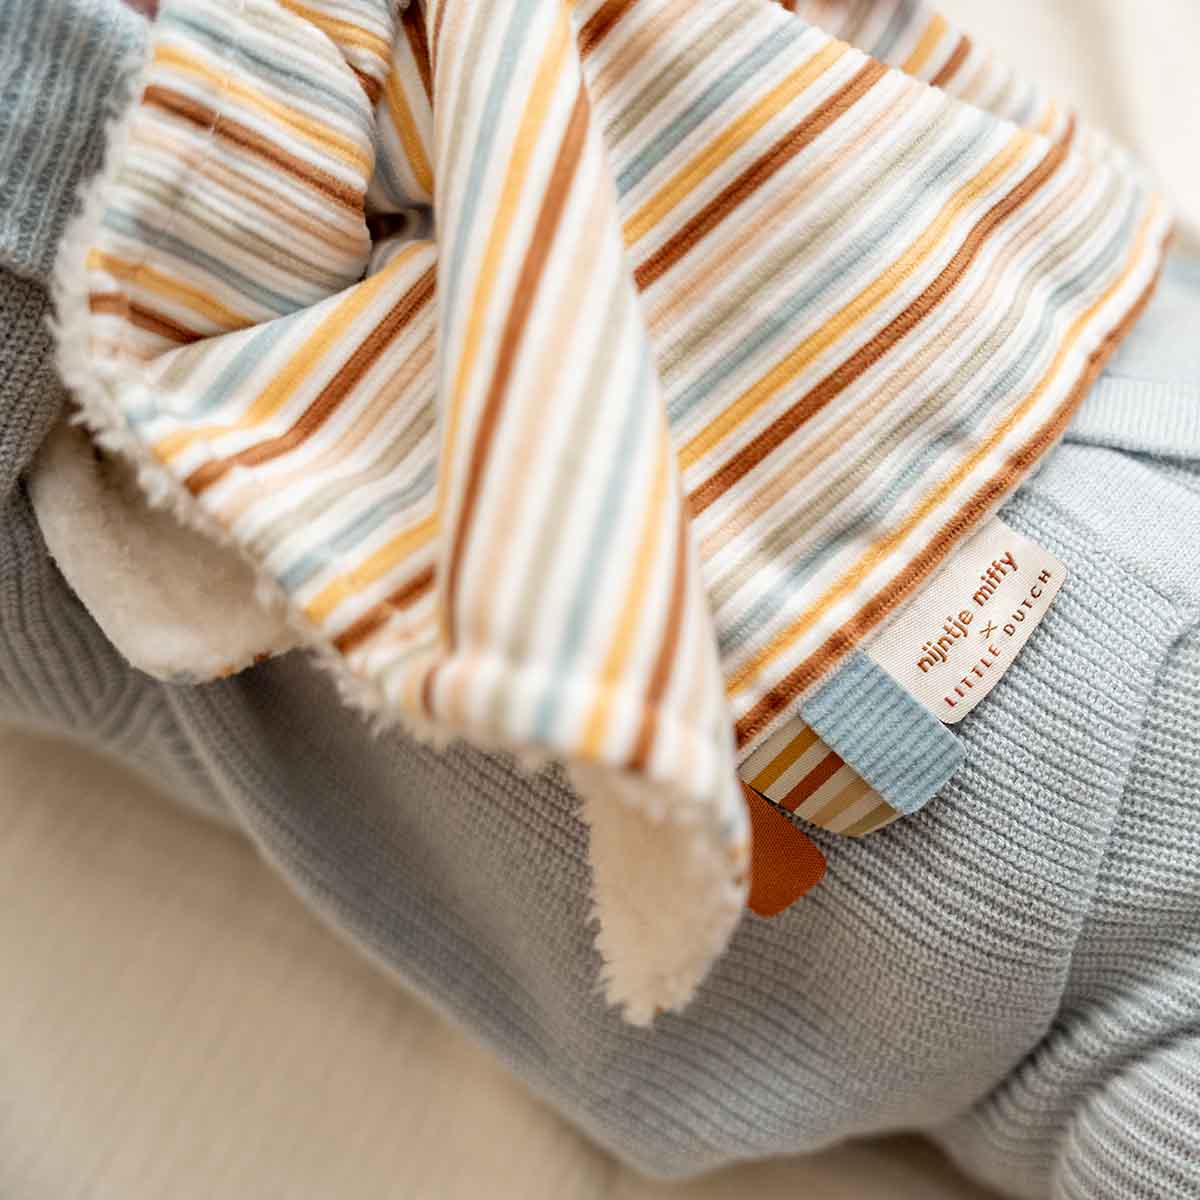 Miffy x Little Dutch Cuddle Cloth - Sunny Stripes